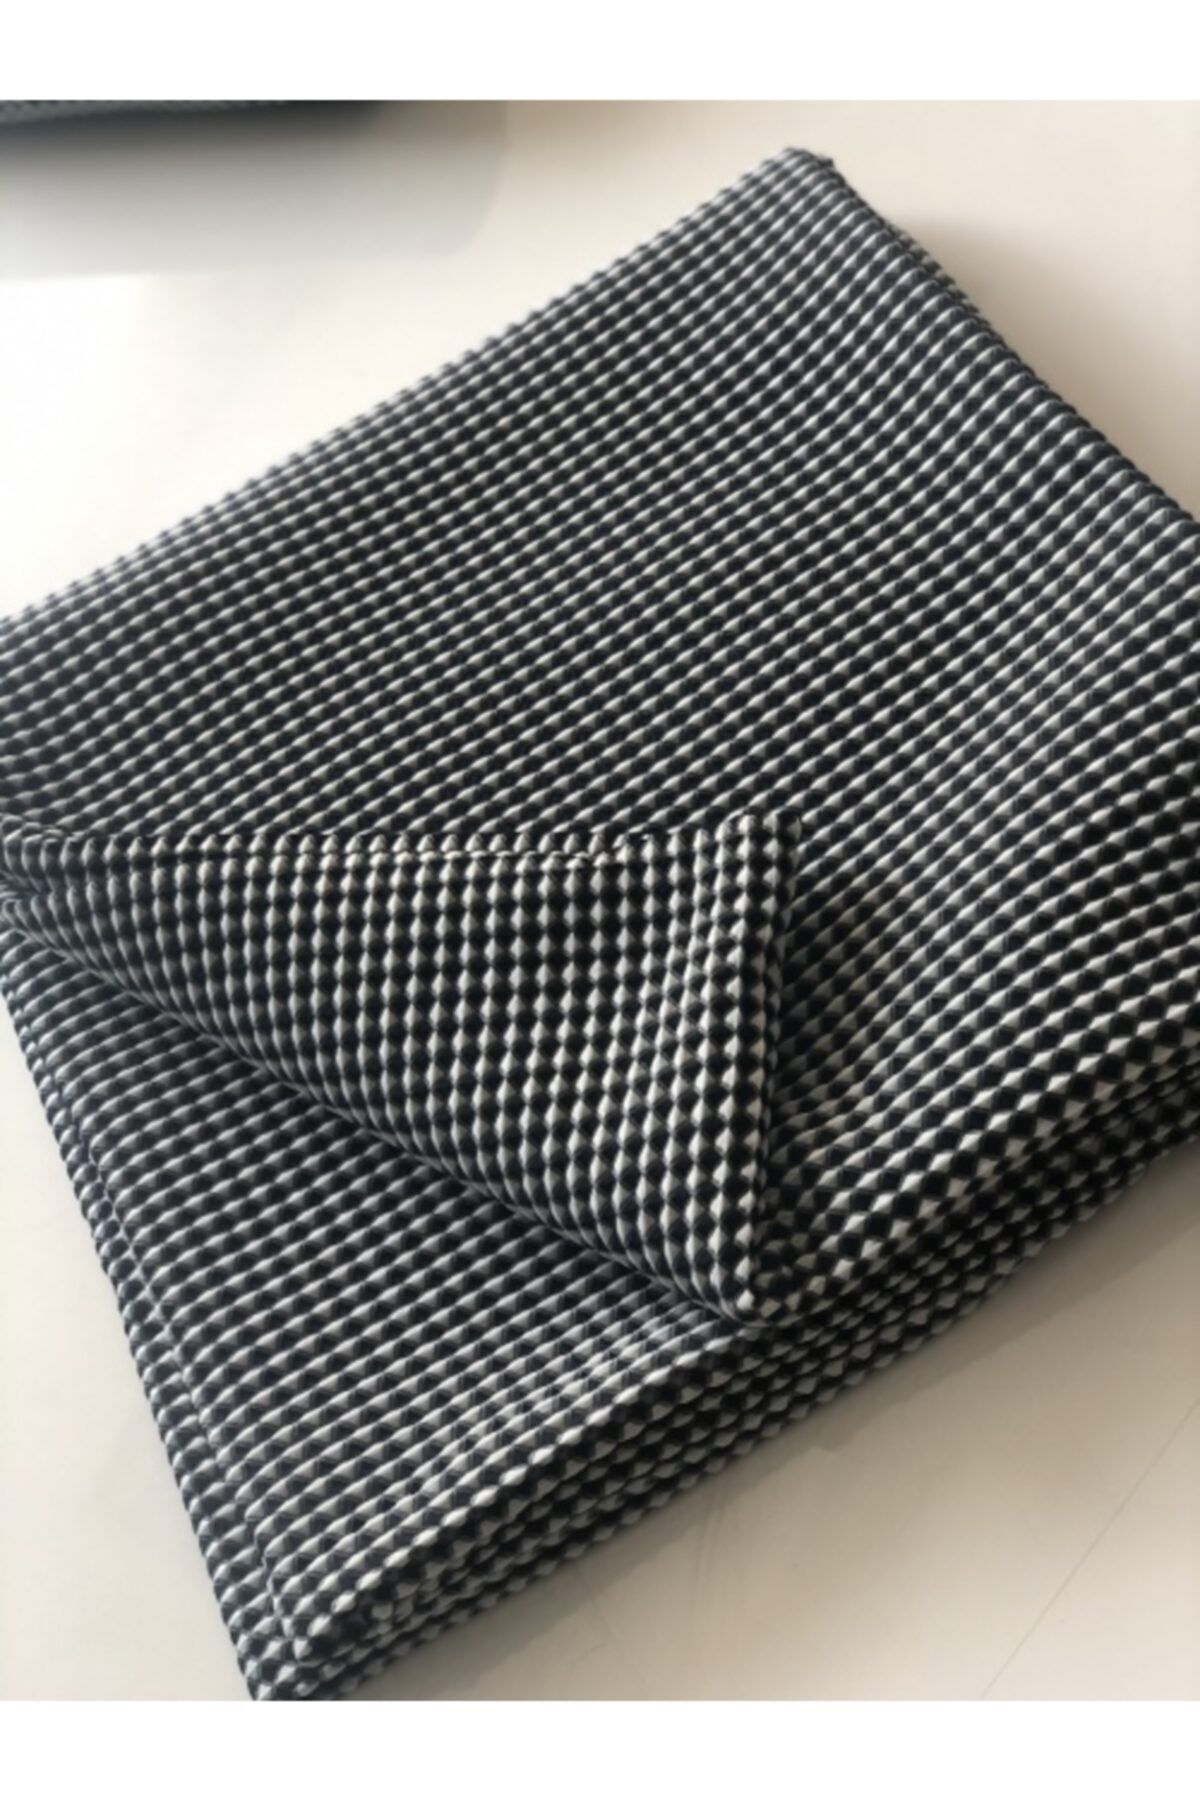 Niu Home Fabrics Siyah Beyaz Petek Dokulu Tek Kişilik Yatak Örtüsü Set